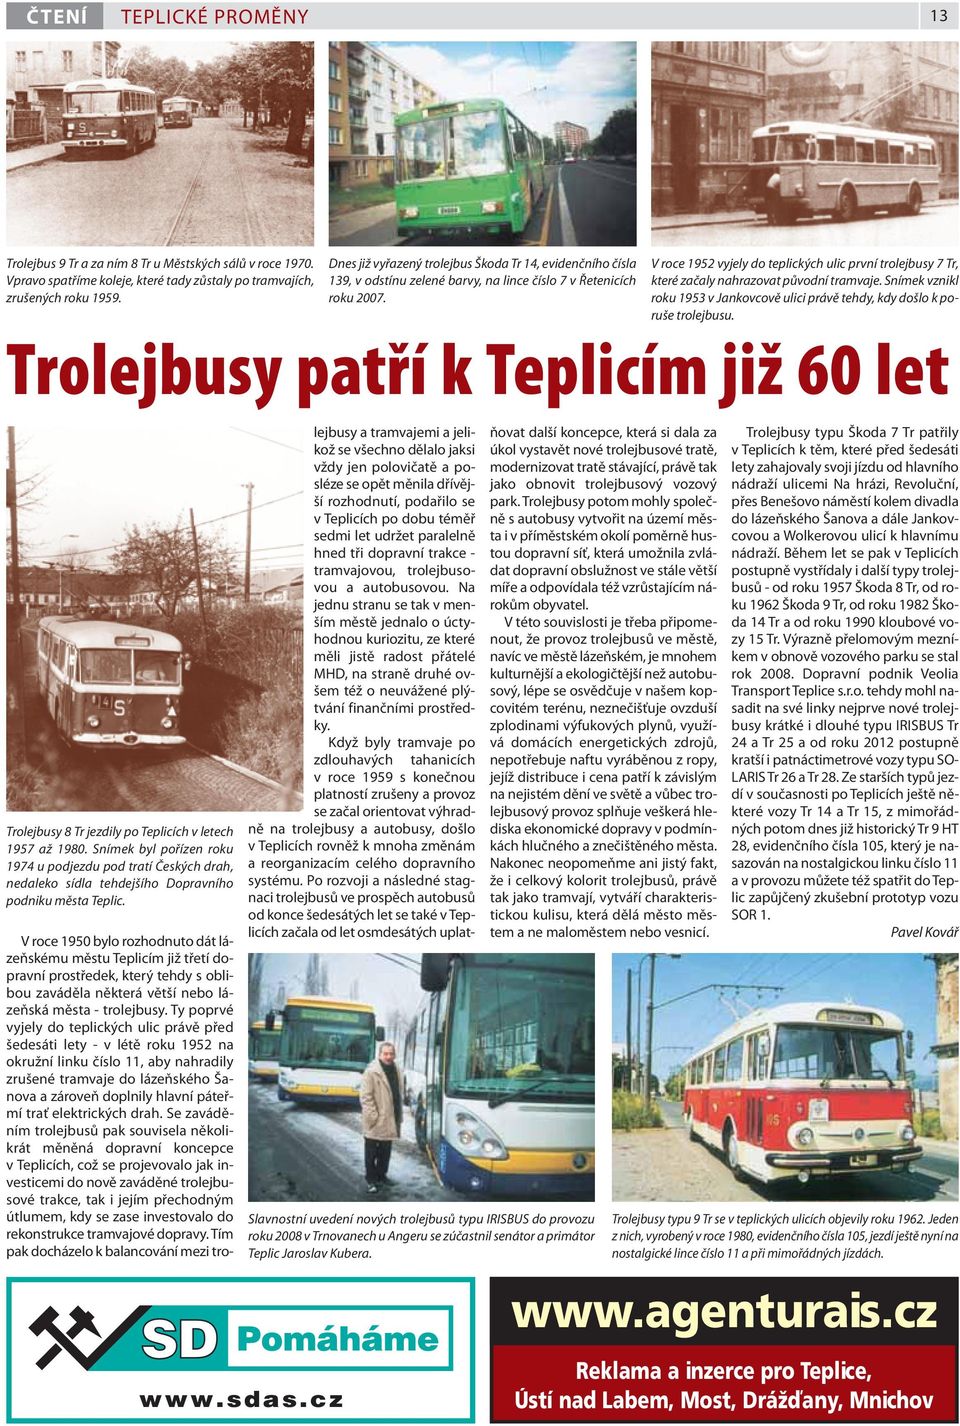 V roce 1952 vyjely do teplických ulic první trolejbusy 7 Tr, které začaly nahrazovat původní tramvaje. Snímek vznikl roku 1953 v Jankovcově ulici právě tehdy, kdy došlo k poruše trolejbusu.